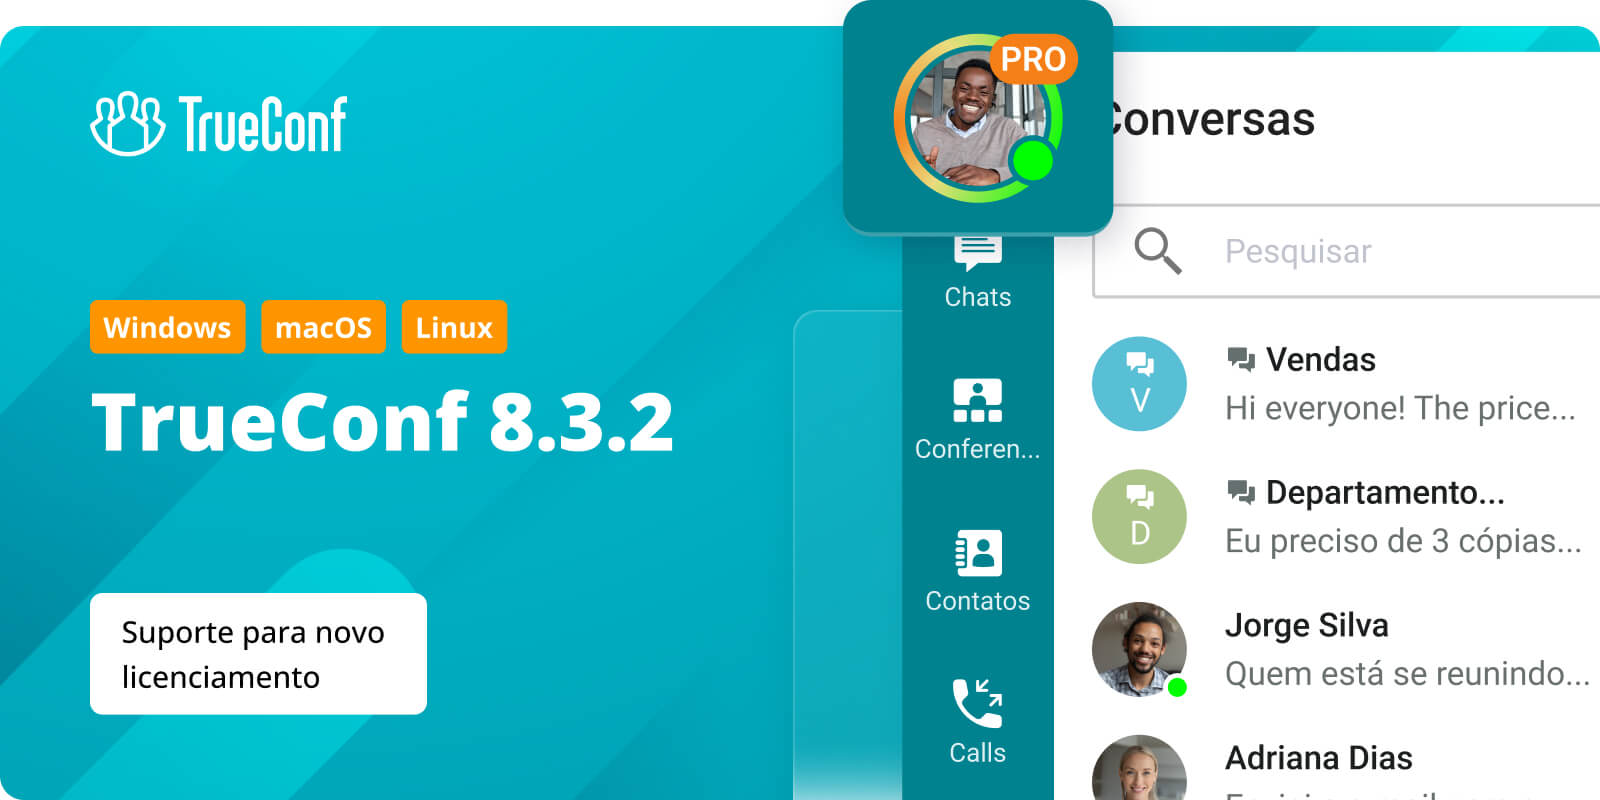 TrueConf 8.3.2 para Windows, macOS e Linux: suporte para novo licenciamento 2